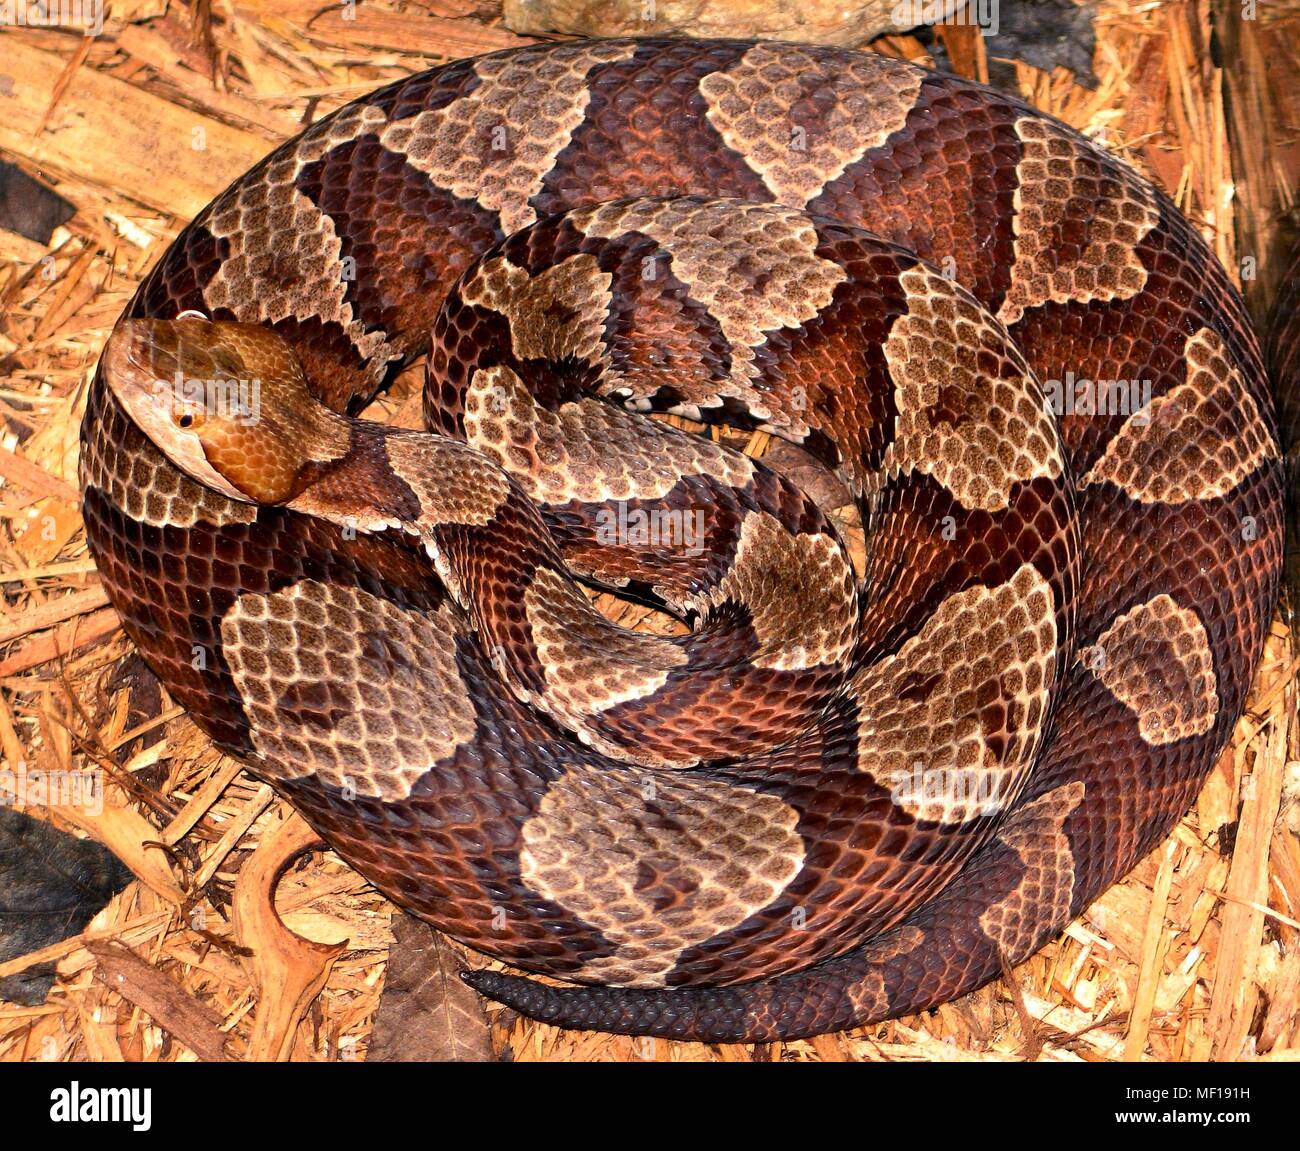 Northern copperhead snake (Agkistrodon contortrix mokasen), 2005. Immagine cortesia di centri per il controllo delle malattie (CDC) / Edward J. Wozniak. () Foto Stock